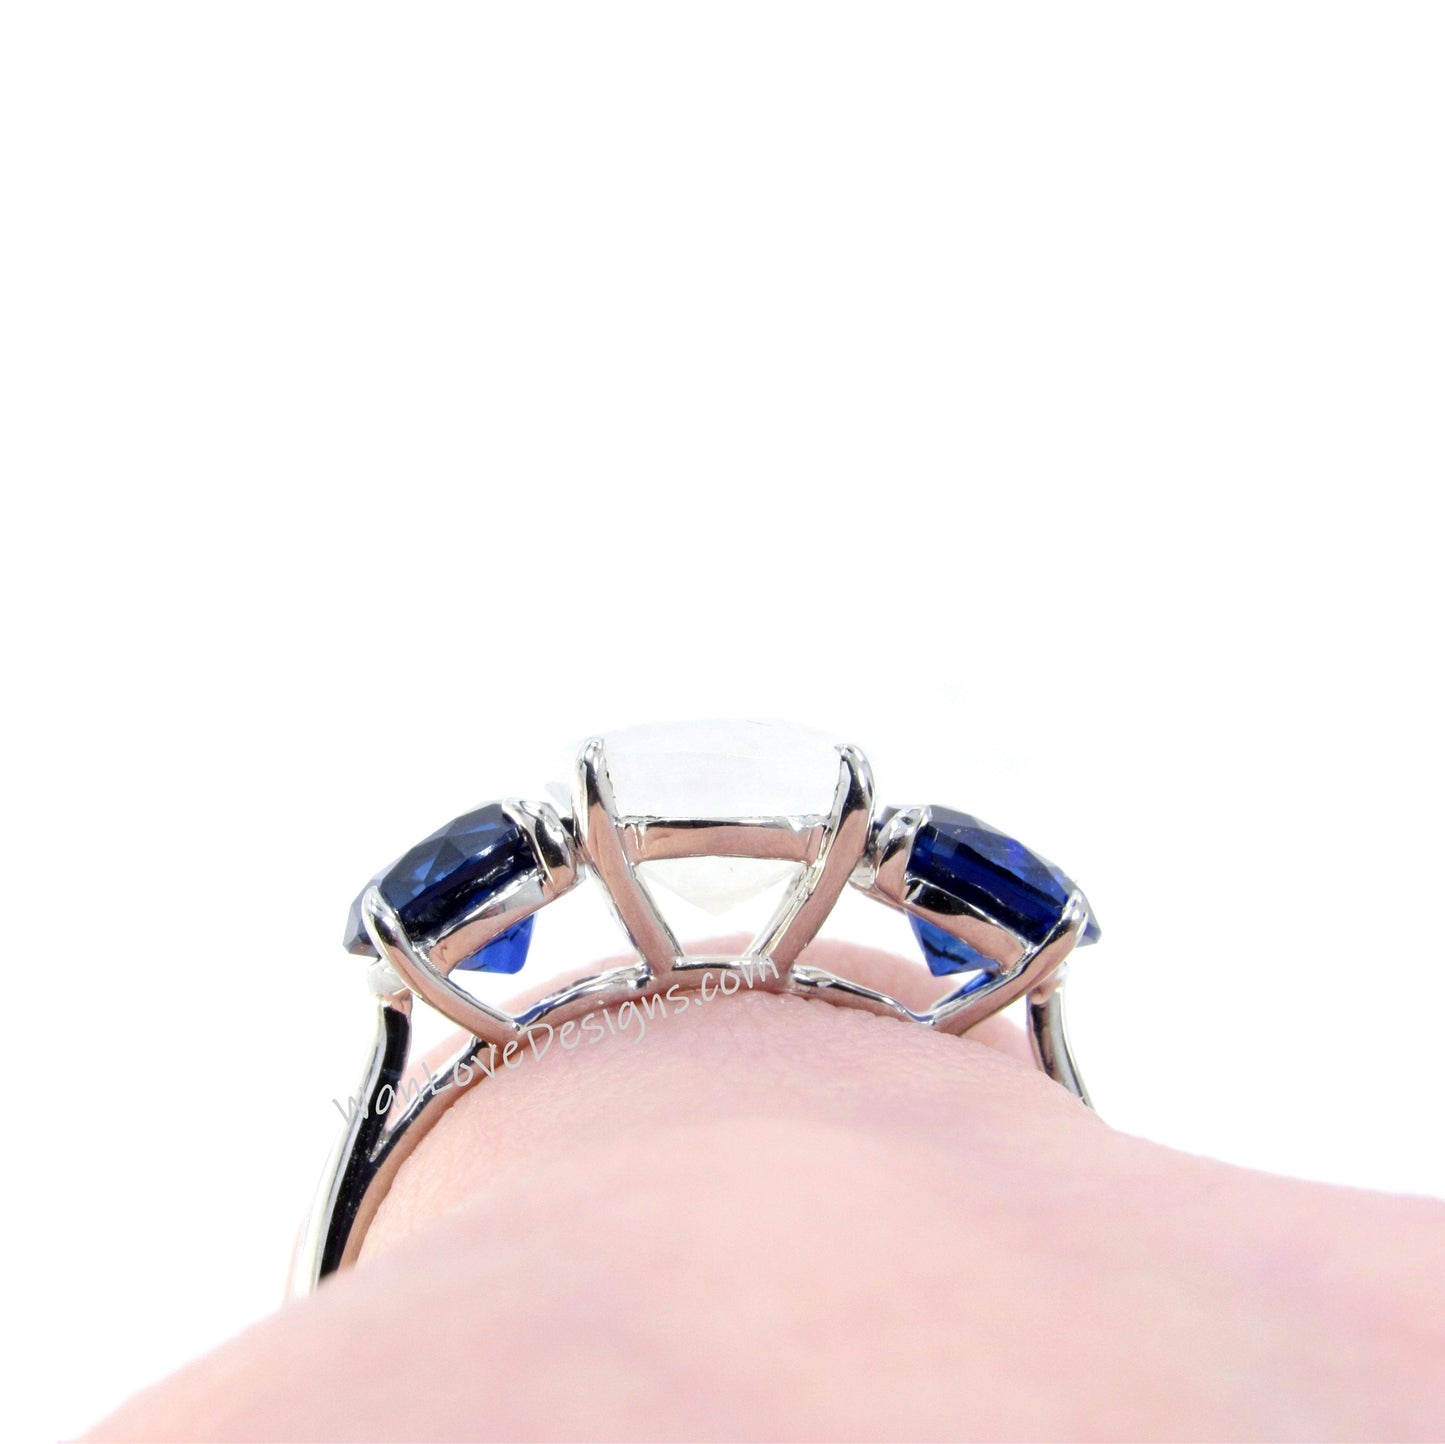 White & Blue Sapphire 3 Gem Stone Round Engagement Ring 2ct 8mm 1ct 6mm Custom Wedding Anniversary